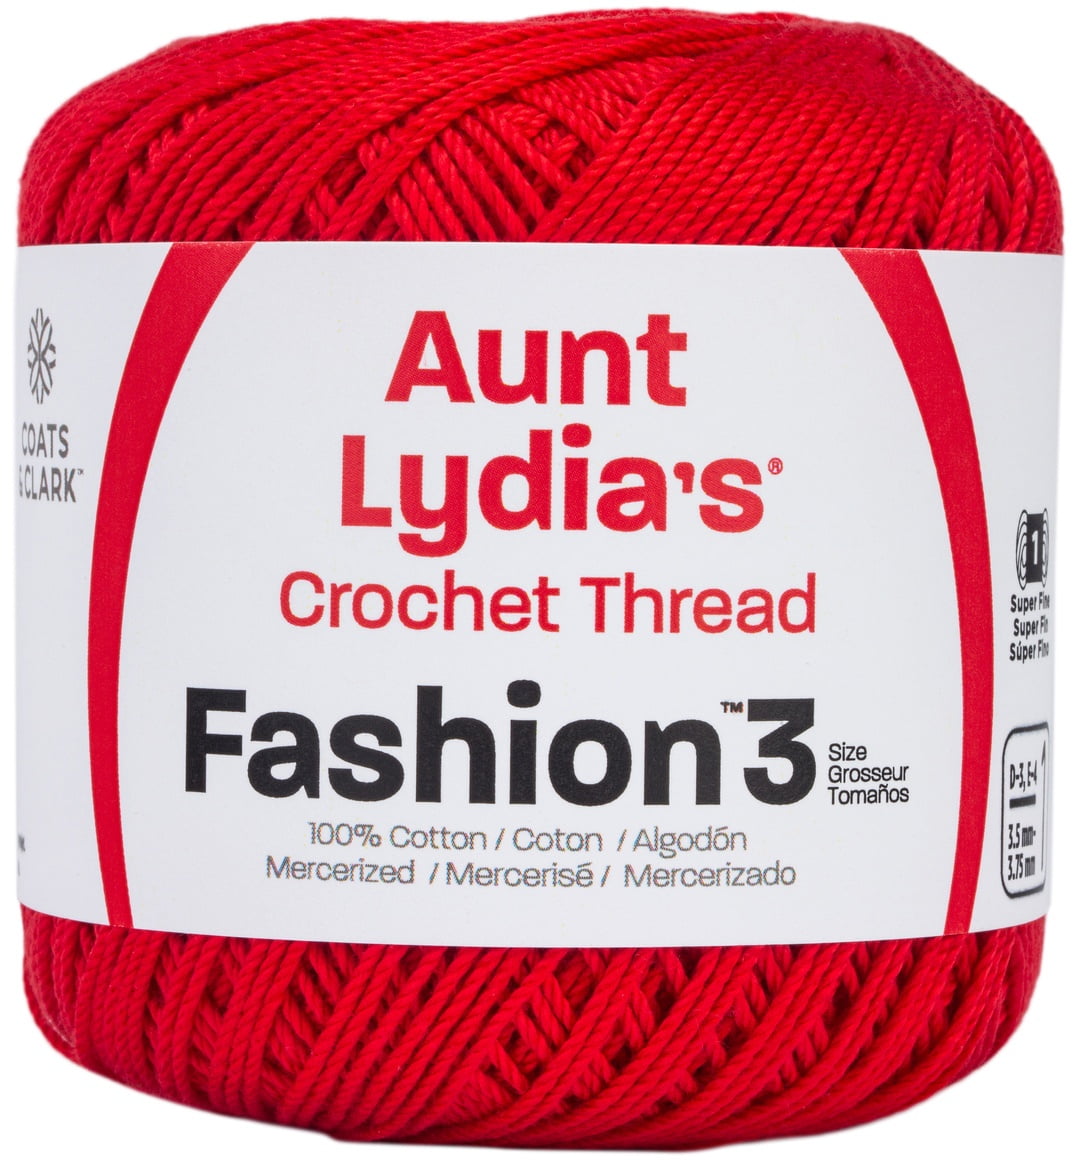 4 spools 150 yards each Aunt Lydia's Crochet Thread Fashion 3 Warm